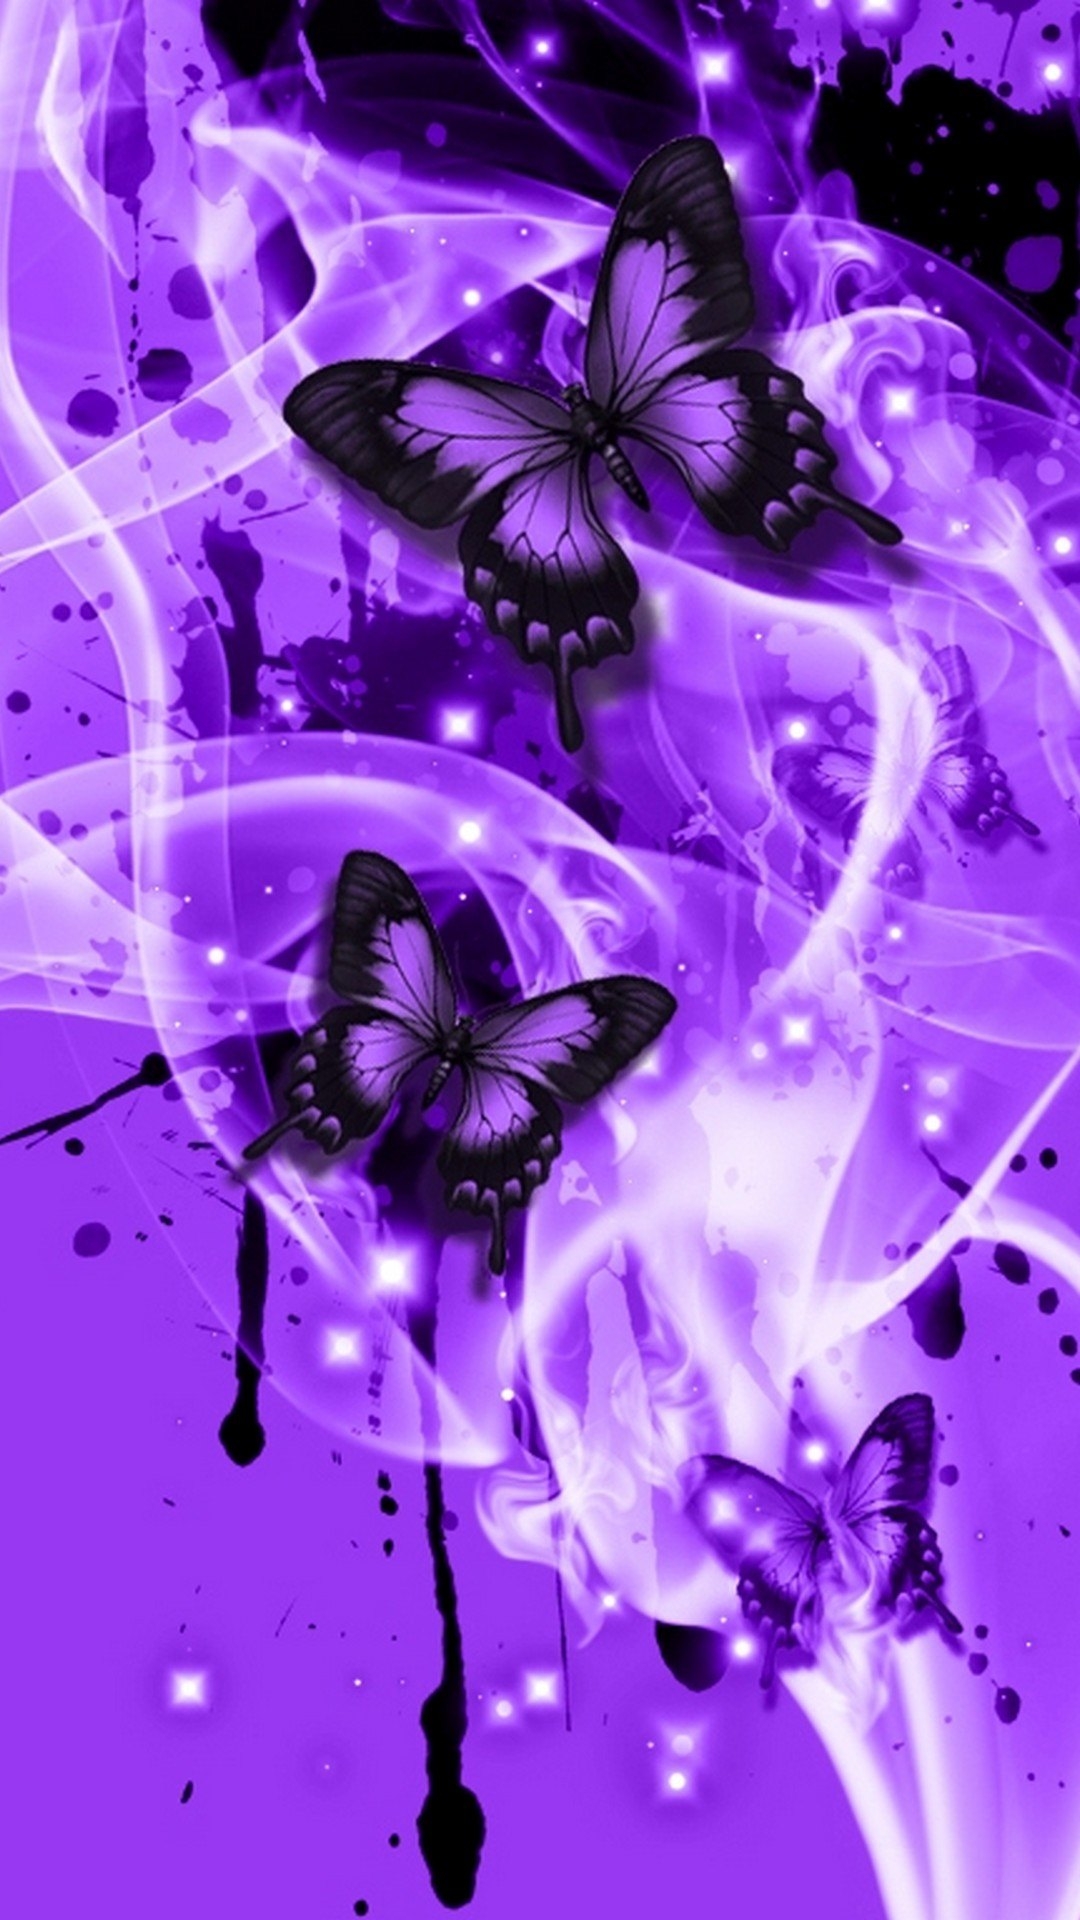 Картинка на заставку телефона для девочки. Бабочка фиолетовая. Красивый фон на телефон. Сиреневые бабочки. Фиолетовые обои на телефон.